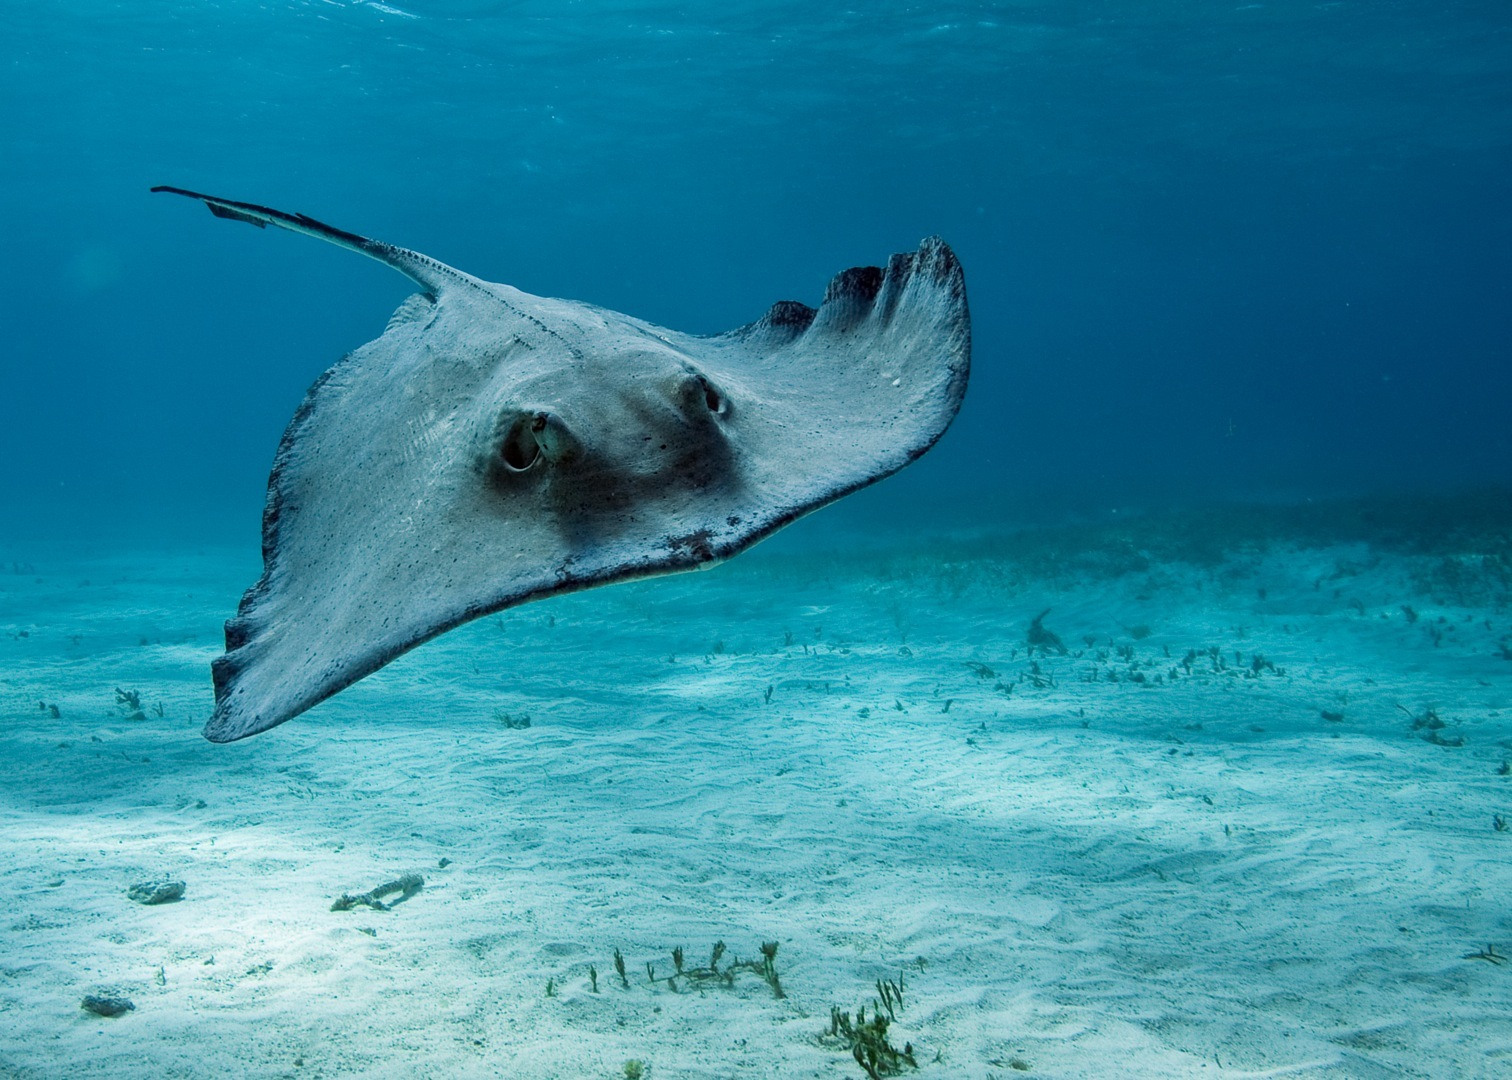 Stingray Swim In Calm Sea Wallpaper Themes